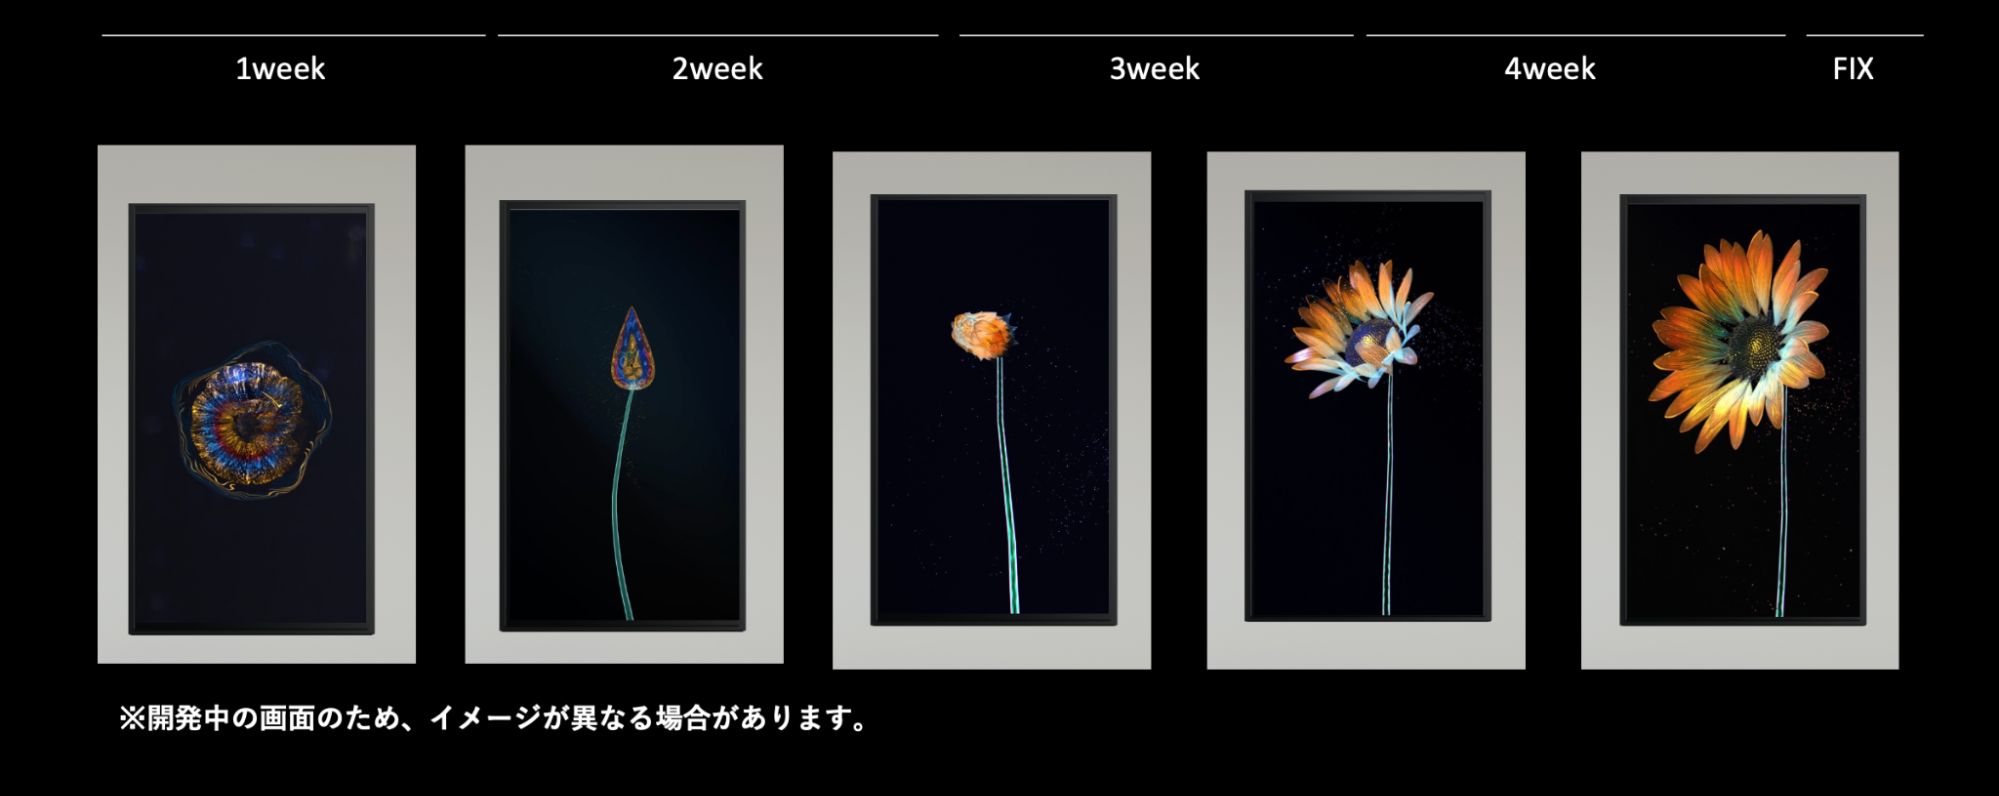 「Log Flower」の開花スケジュール。